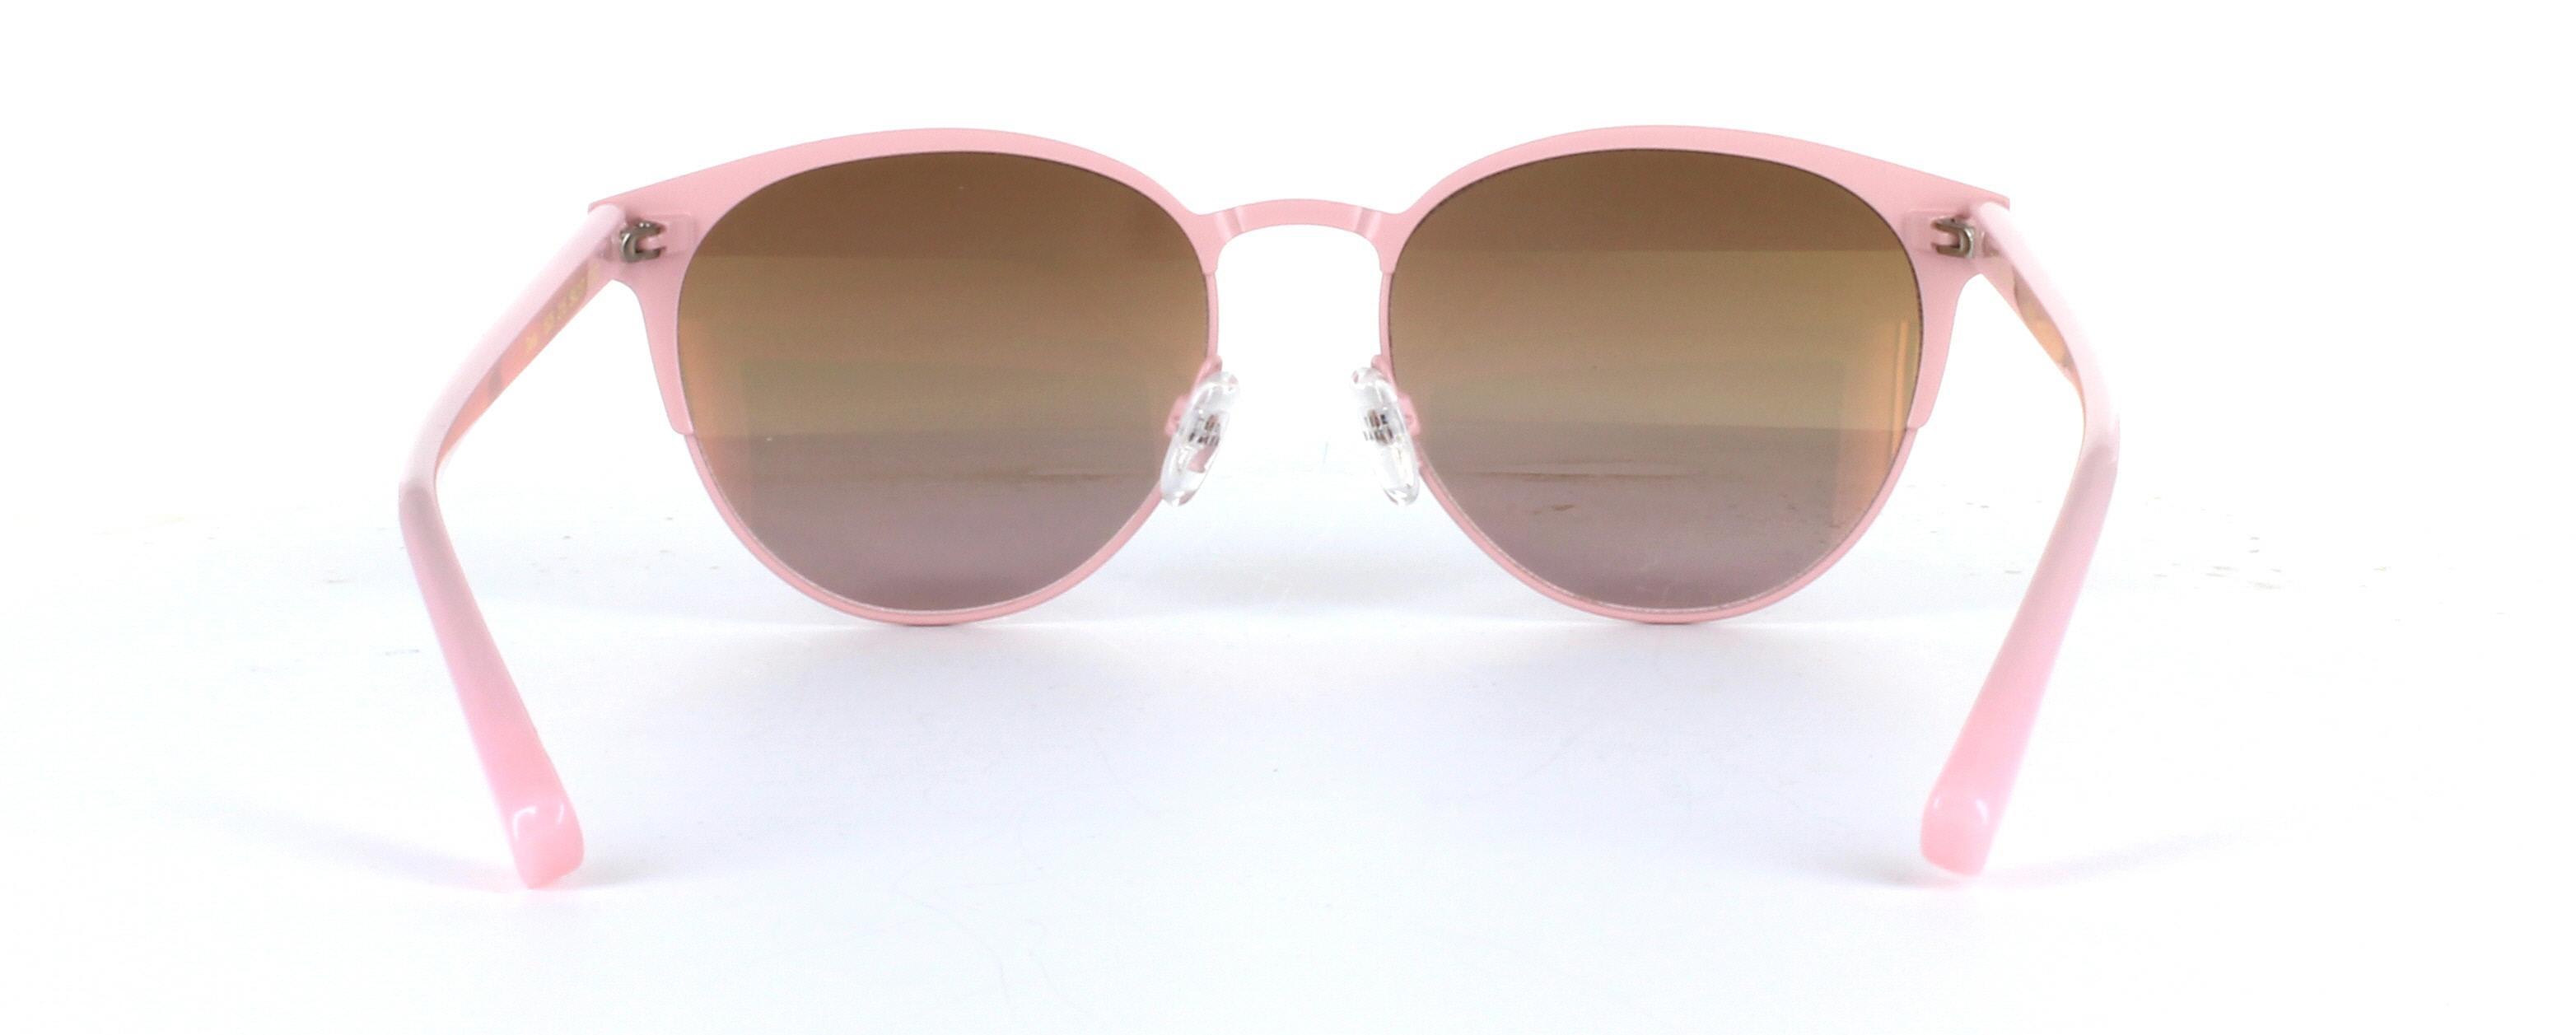 Daila Pink Full Rim Metal Sunglasses - Image View 3